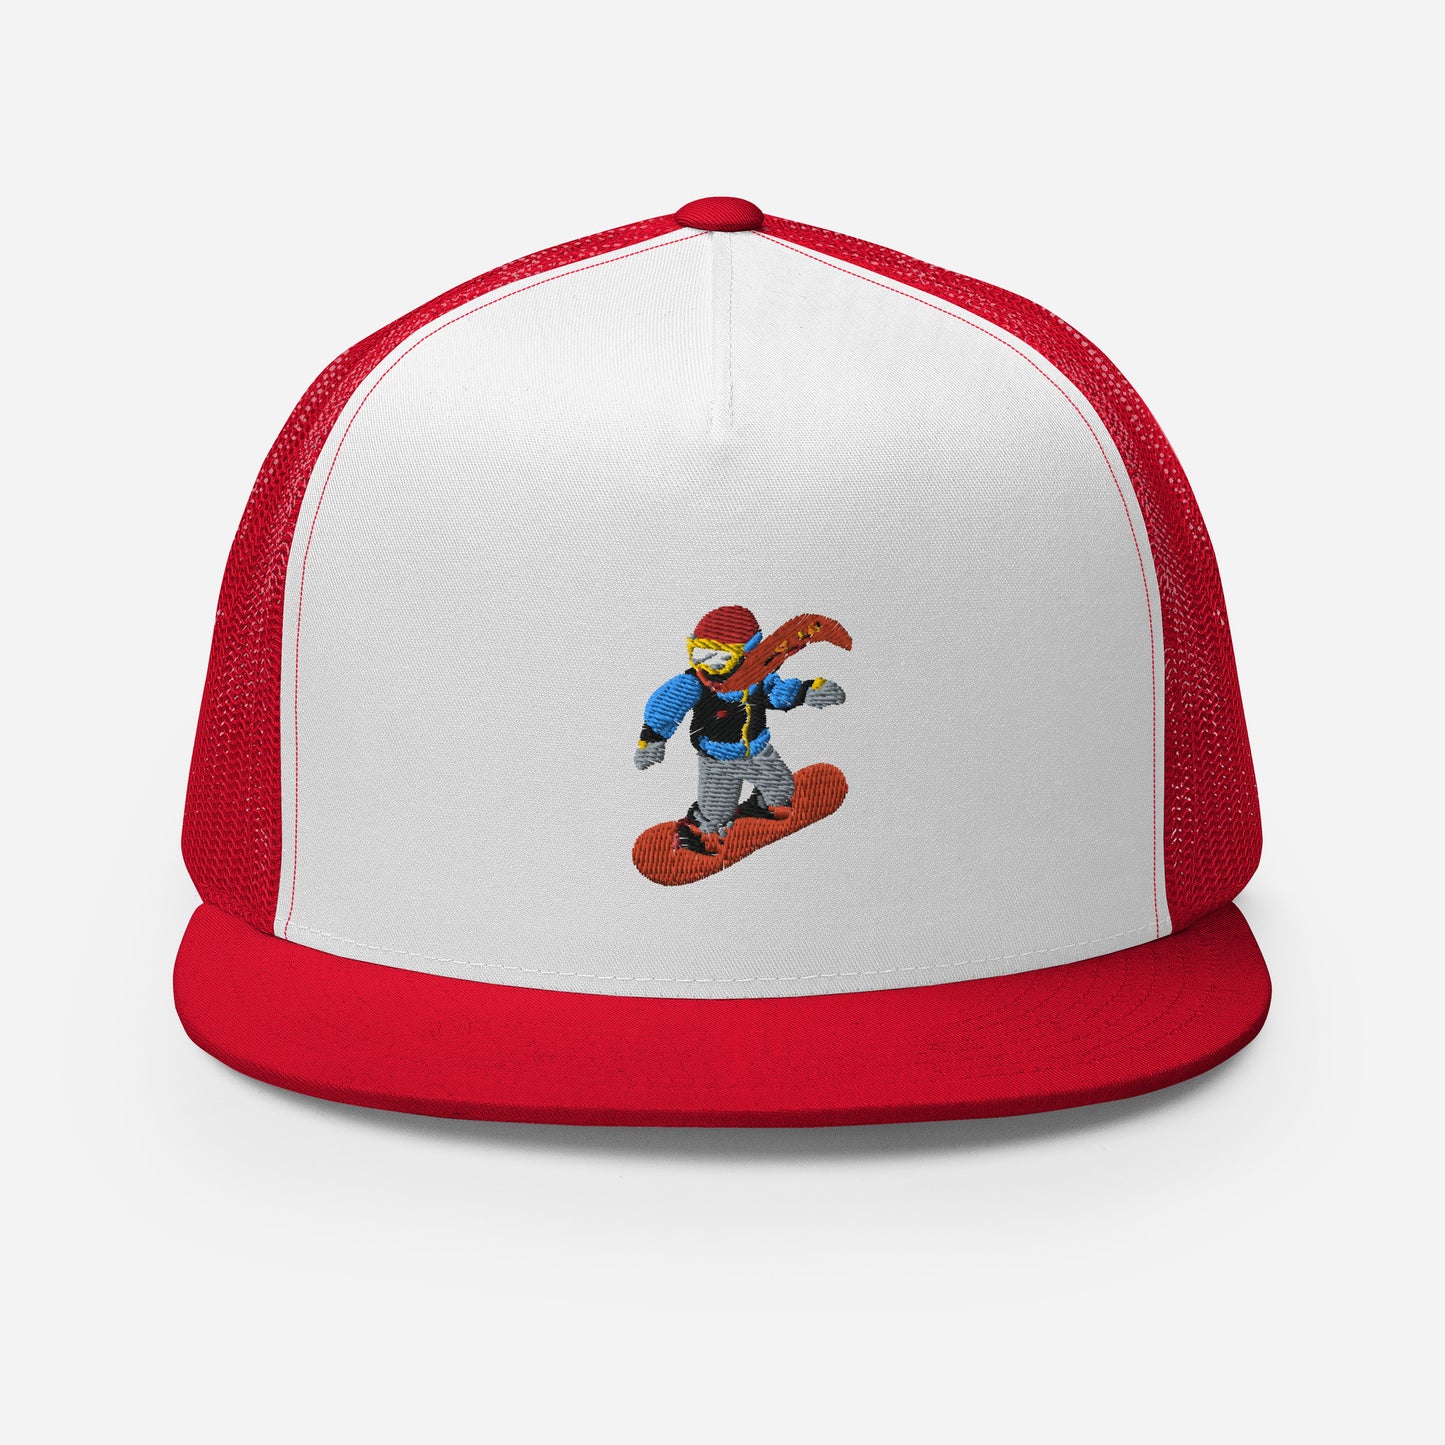 red snowboard emoji hat